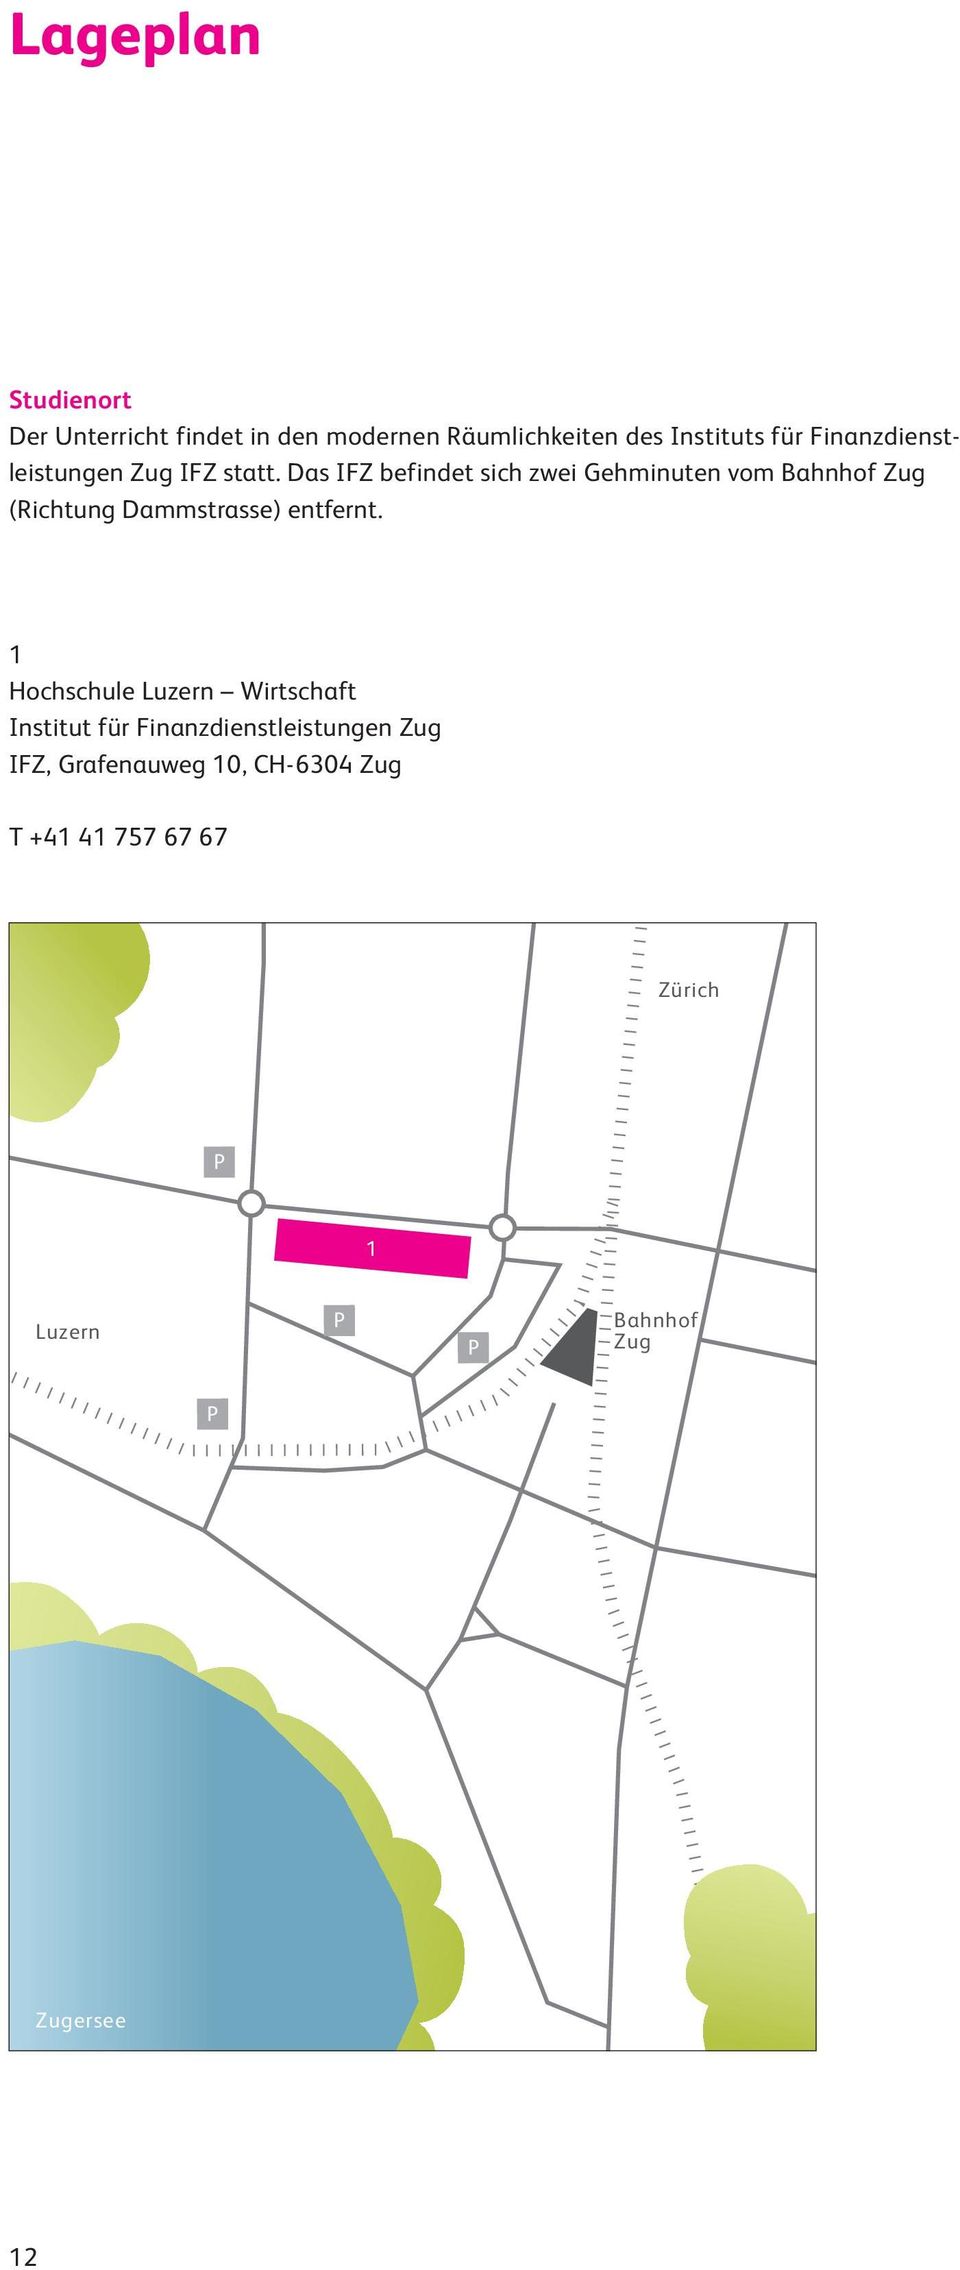 Das IFZ befindet sich zwei Gehminuten vom Bahnhof Zug (Richtung Dammstrasse) entfernt.